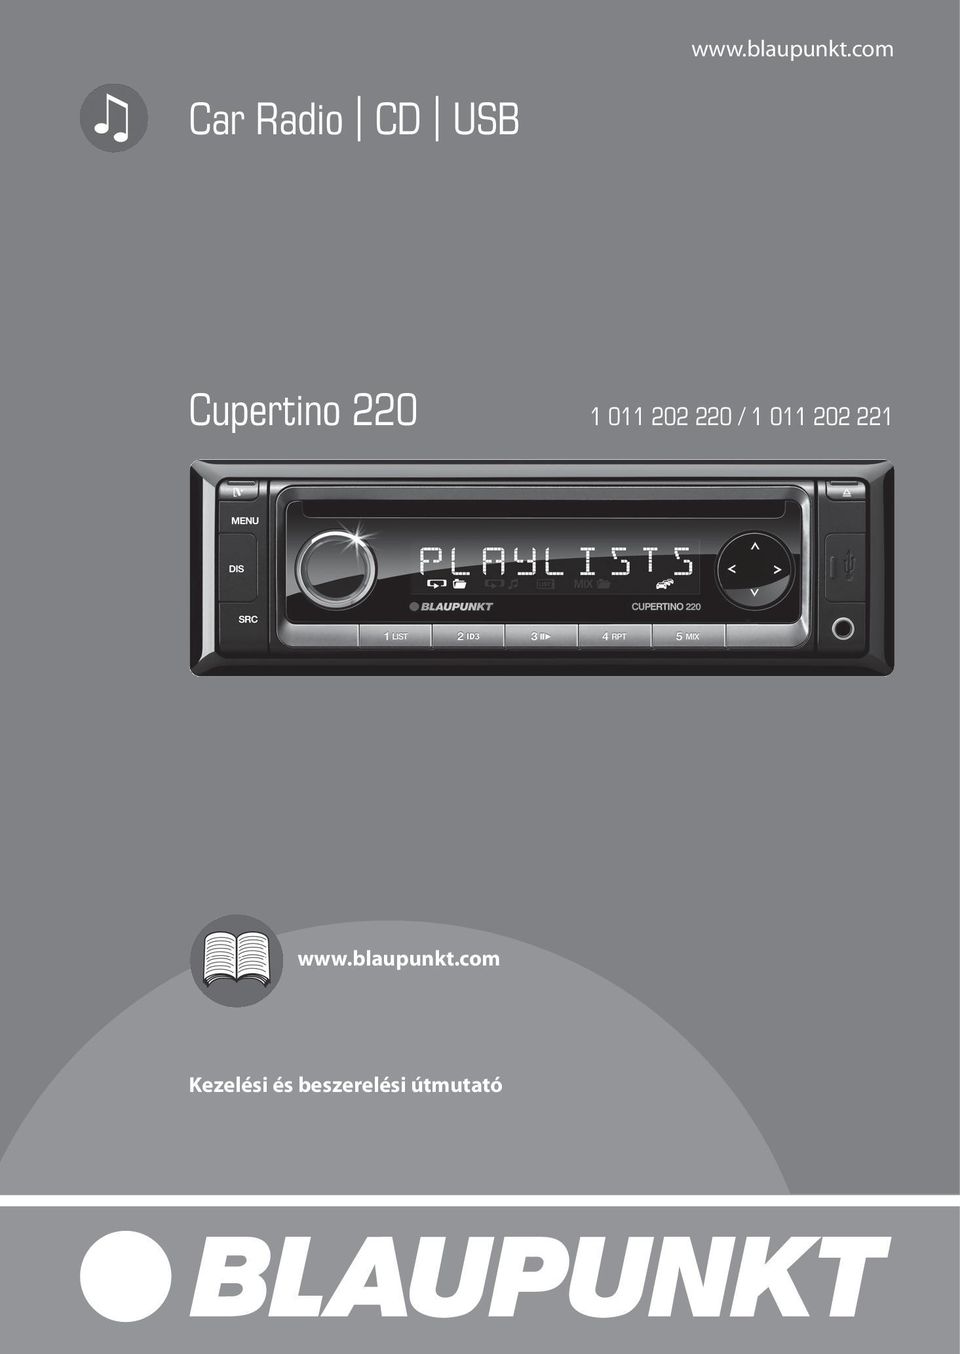 Car Radio CD USB Cupertino / Kezelési és beszerelési útmutató - PDF Free  Download